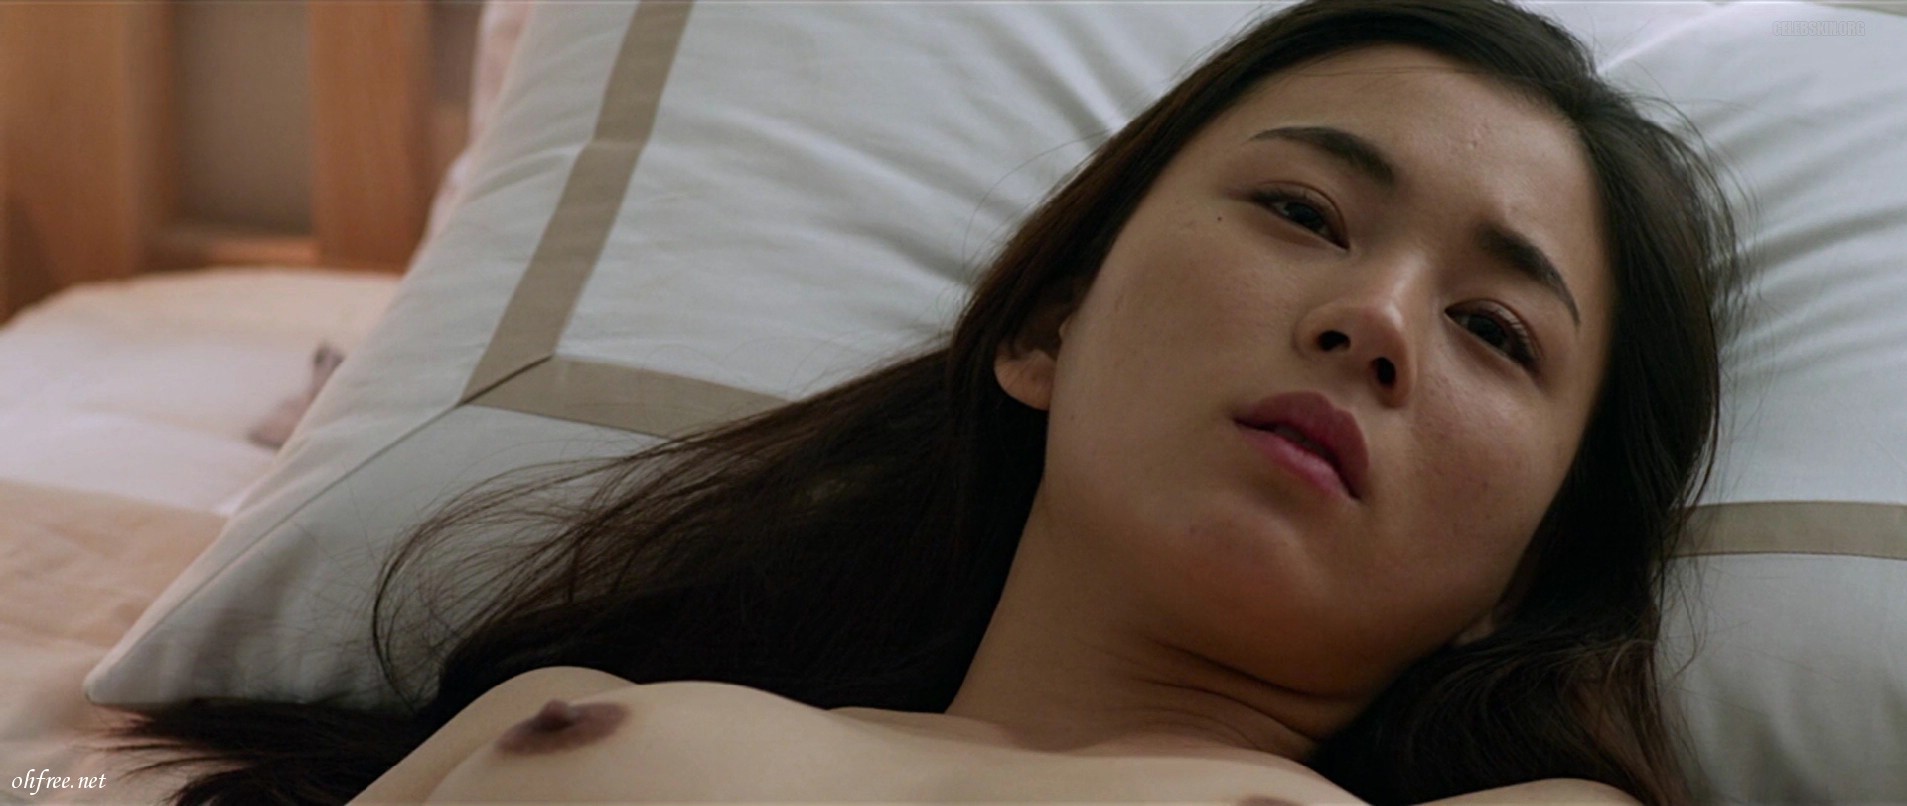 Topless Korean Actress Nasse Instagrame Frauen